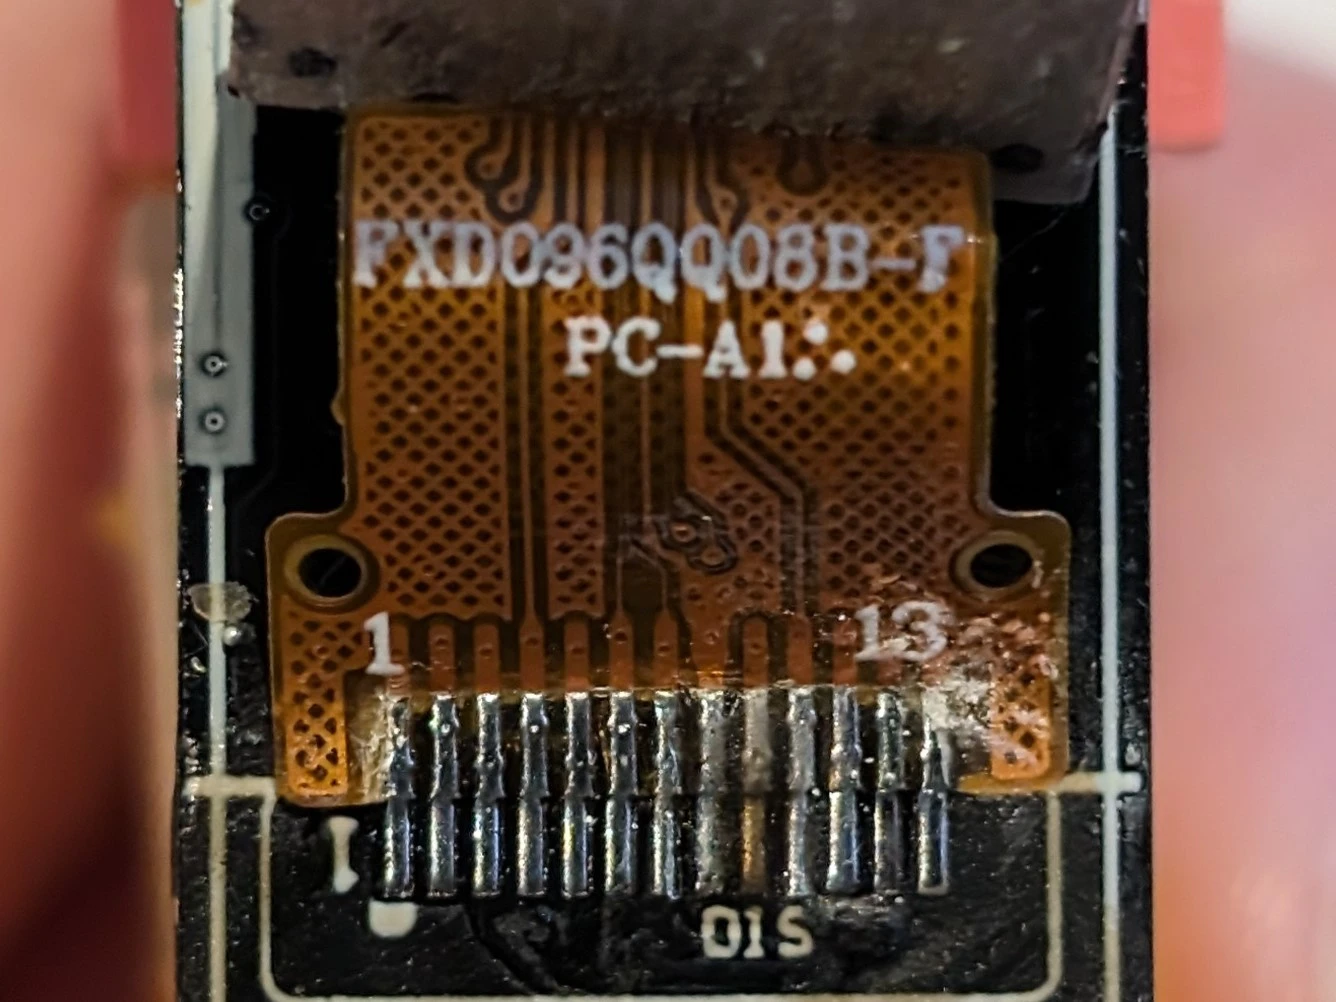 Ленточный кабель ЖК-дисплея, номер детали FXD096QQ08B-F